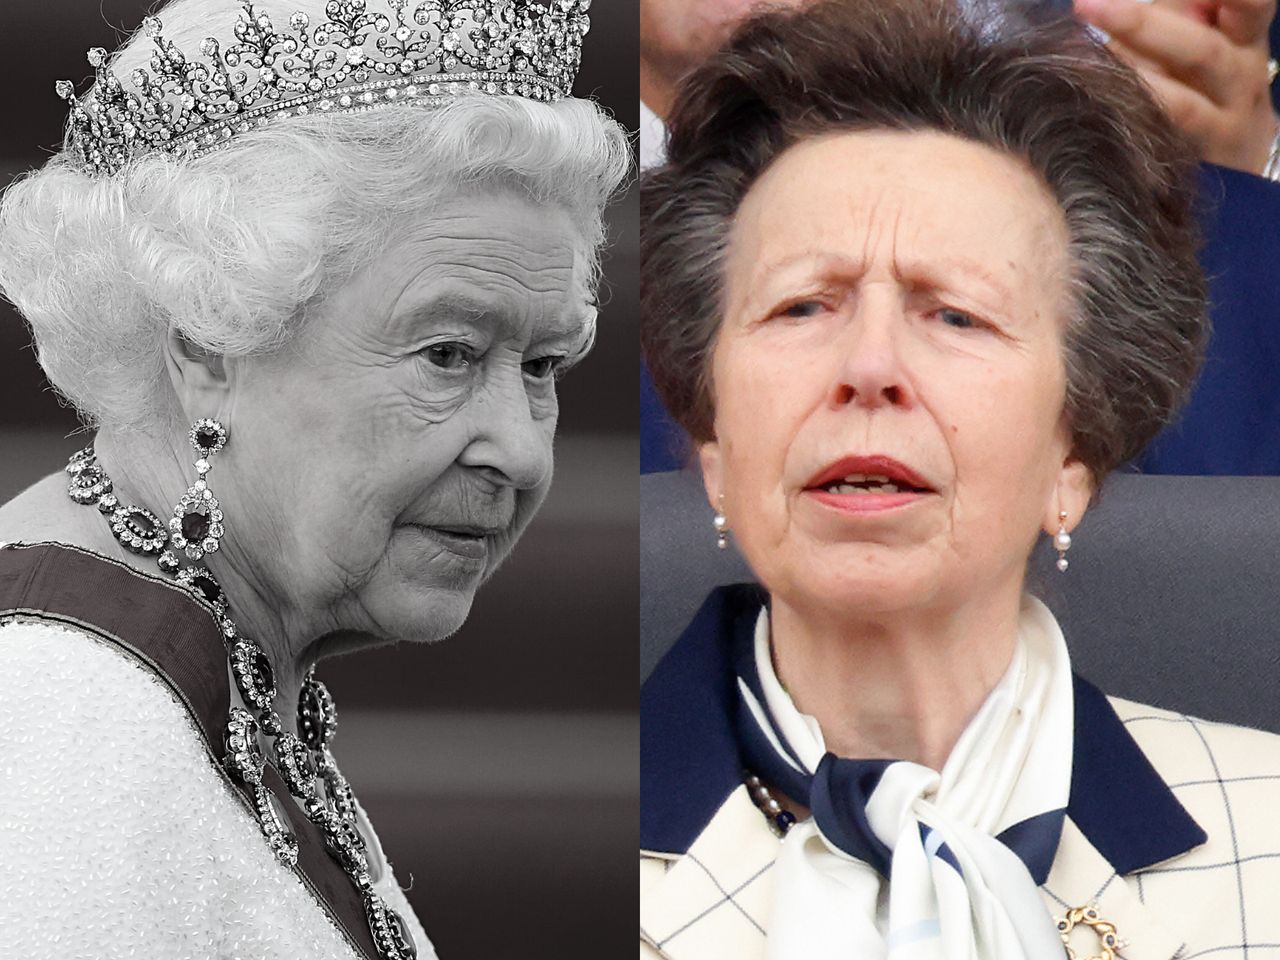 Księżniczka Anna szczerze o decyzji Elżbiety II. "Zrobiła dokładnie to, co trzeba"